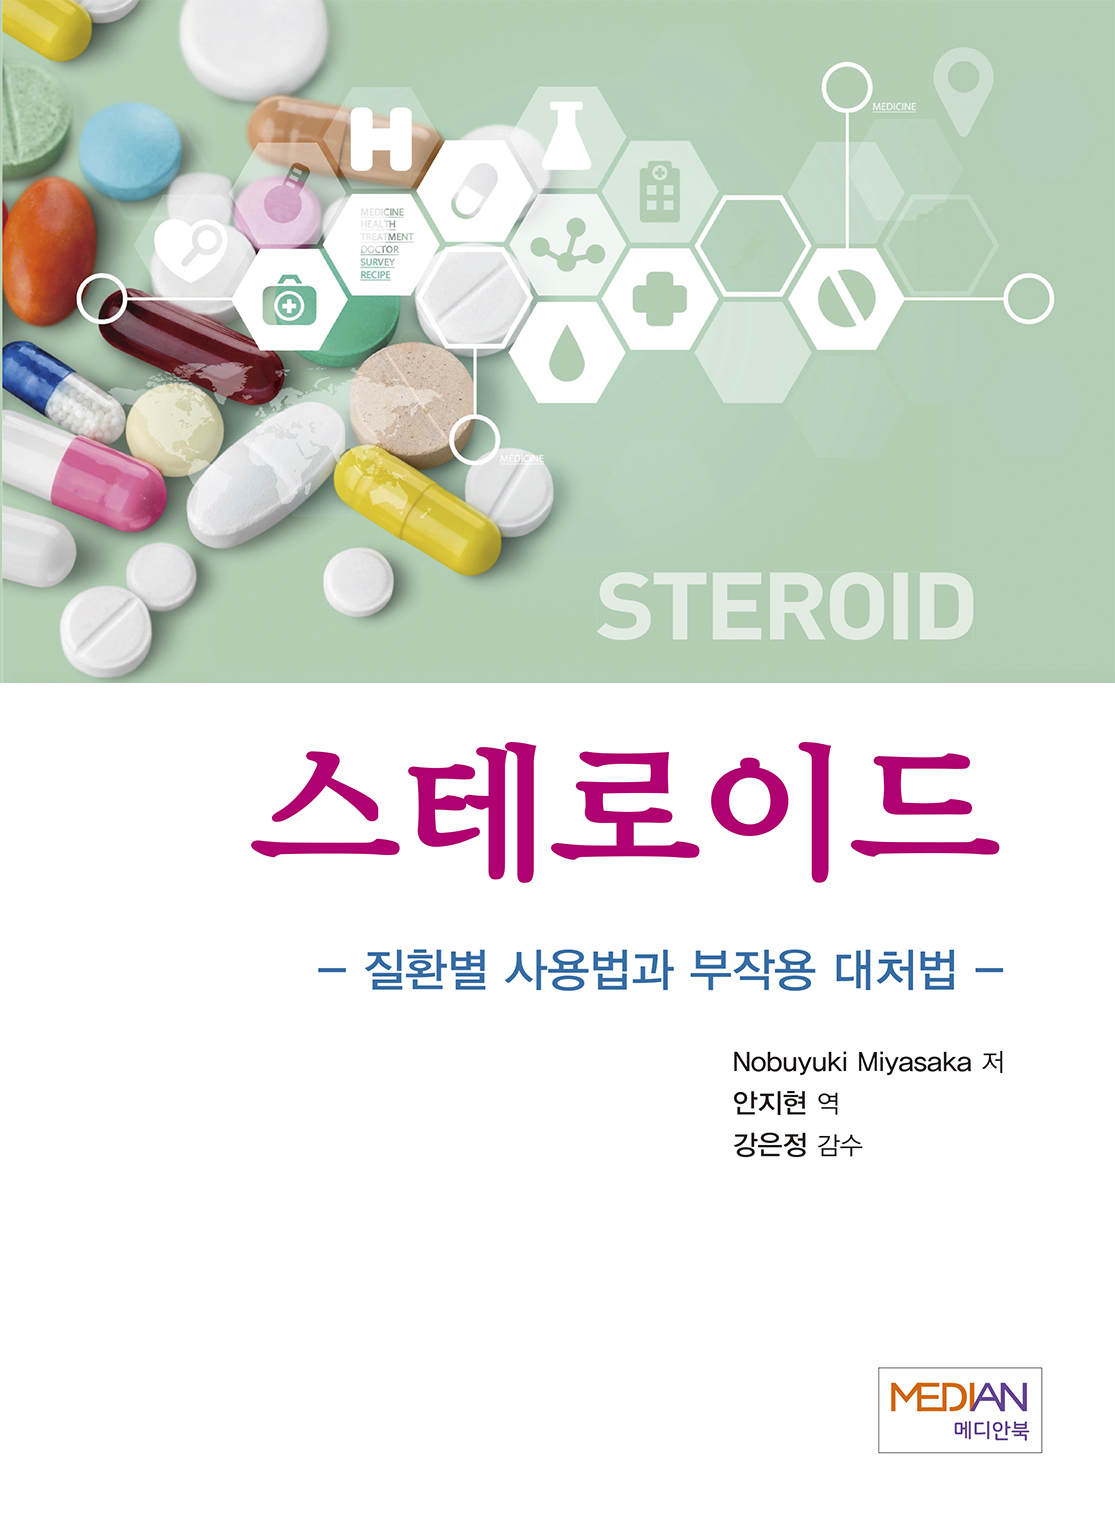 스테로이드- 질환별사용법과 부작용대처법